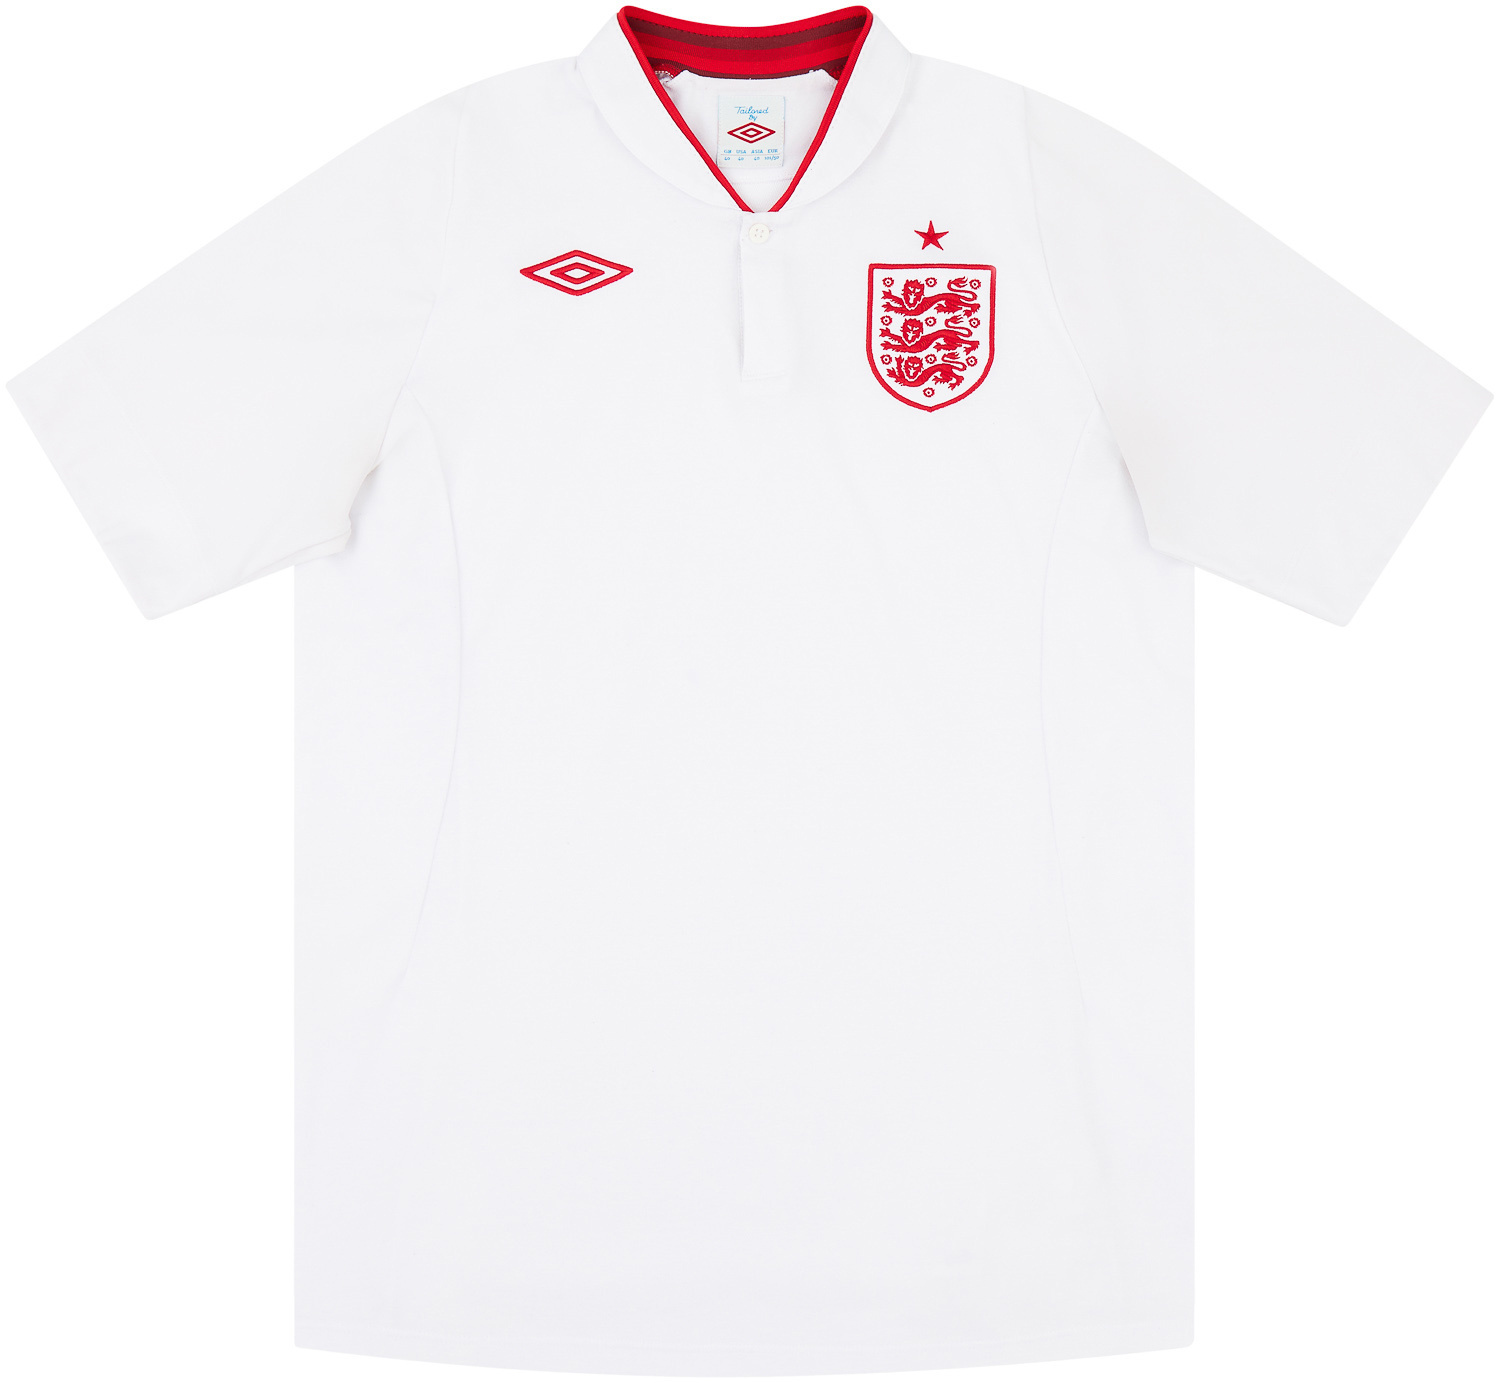 2012-13 England Home Shirt - 9/10 -